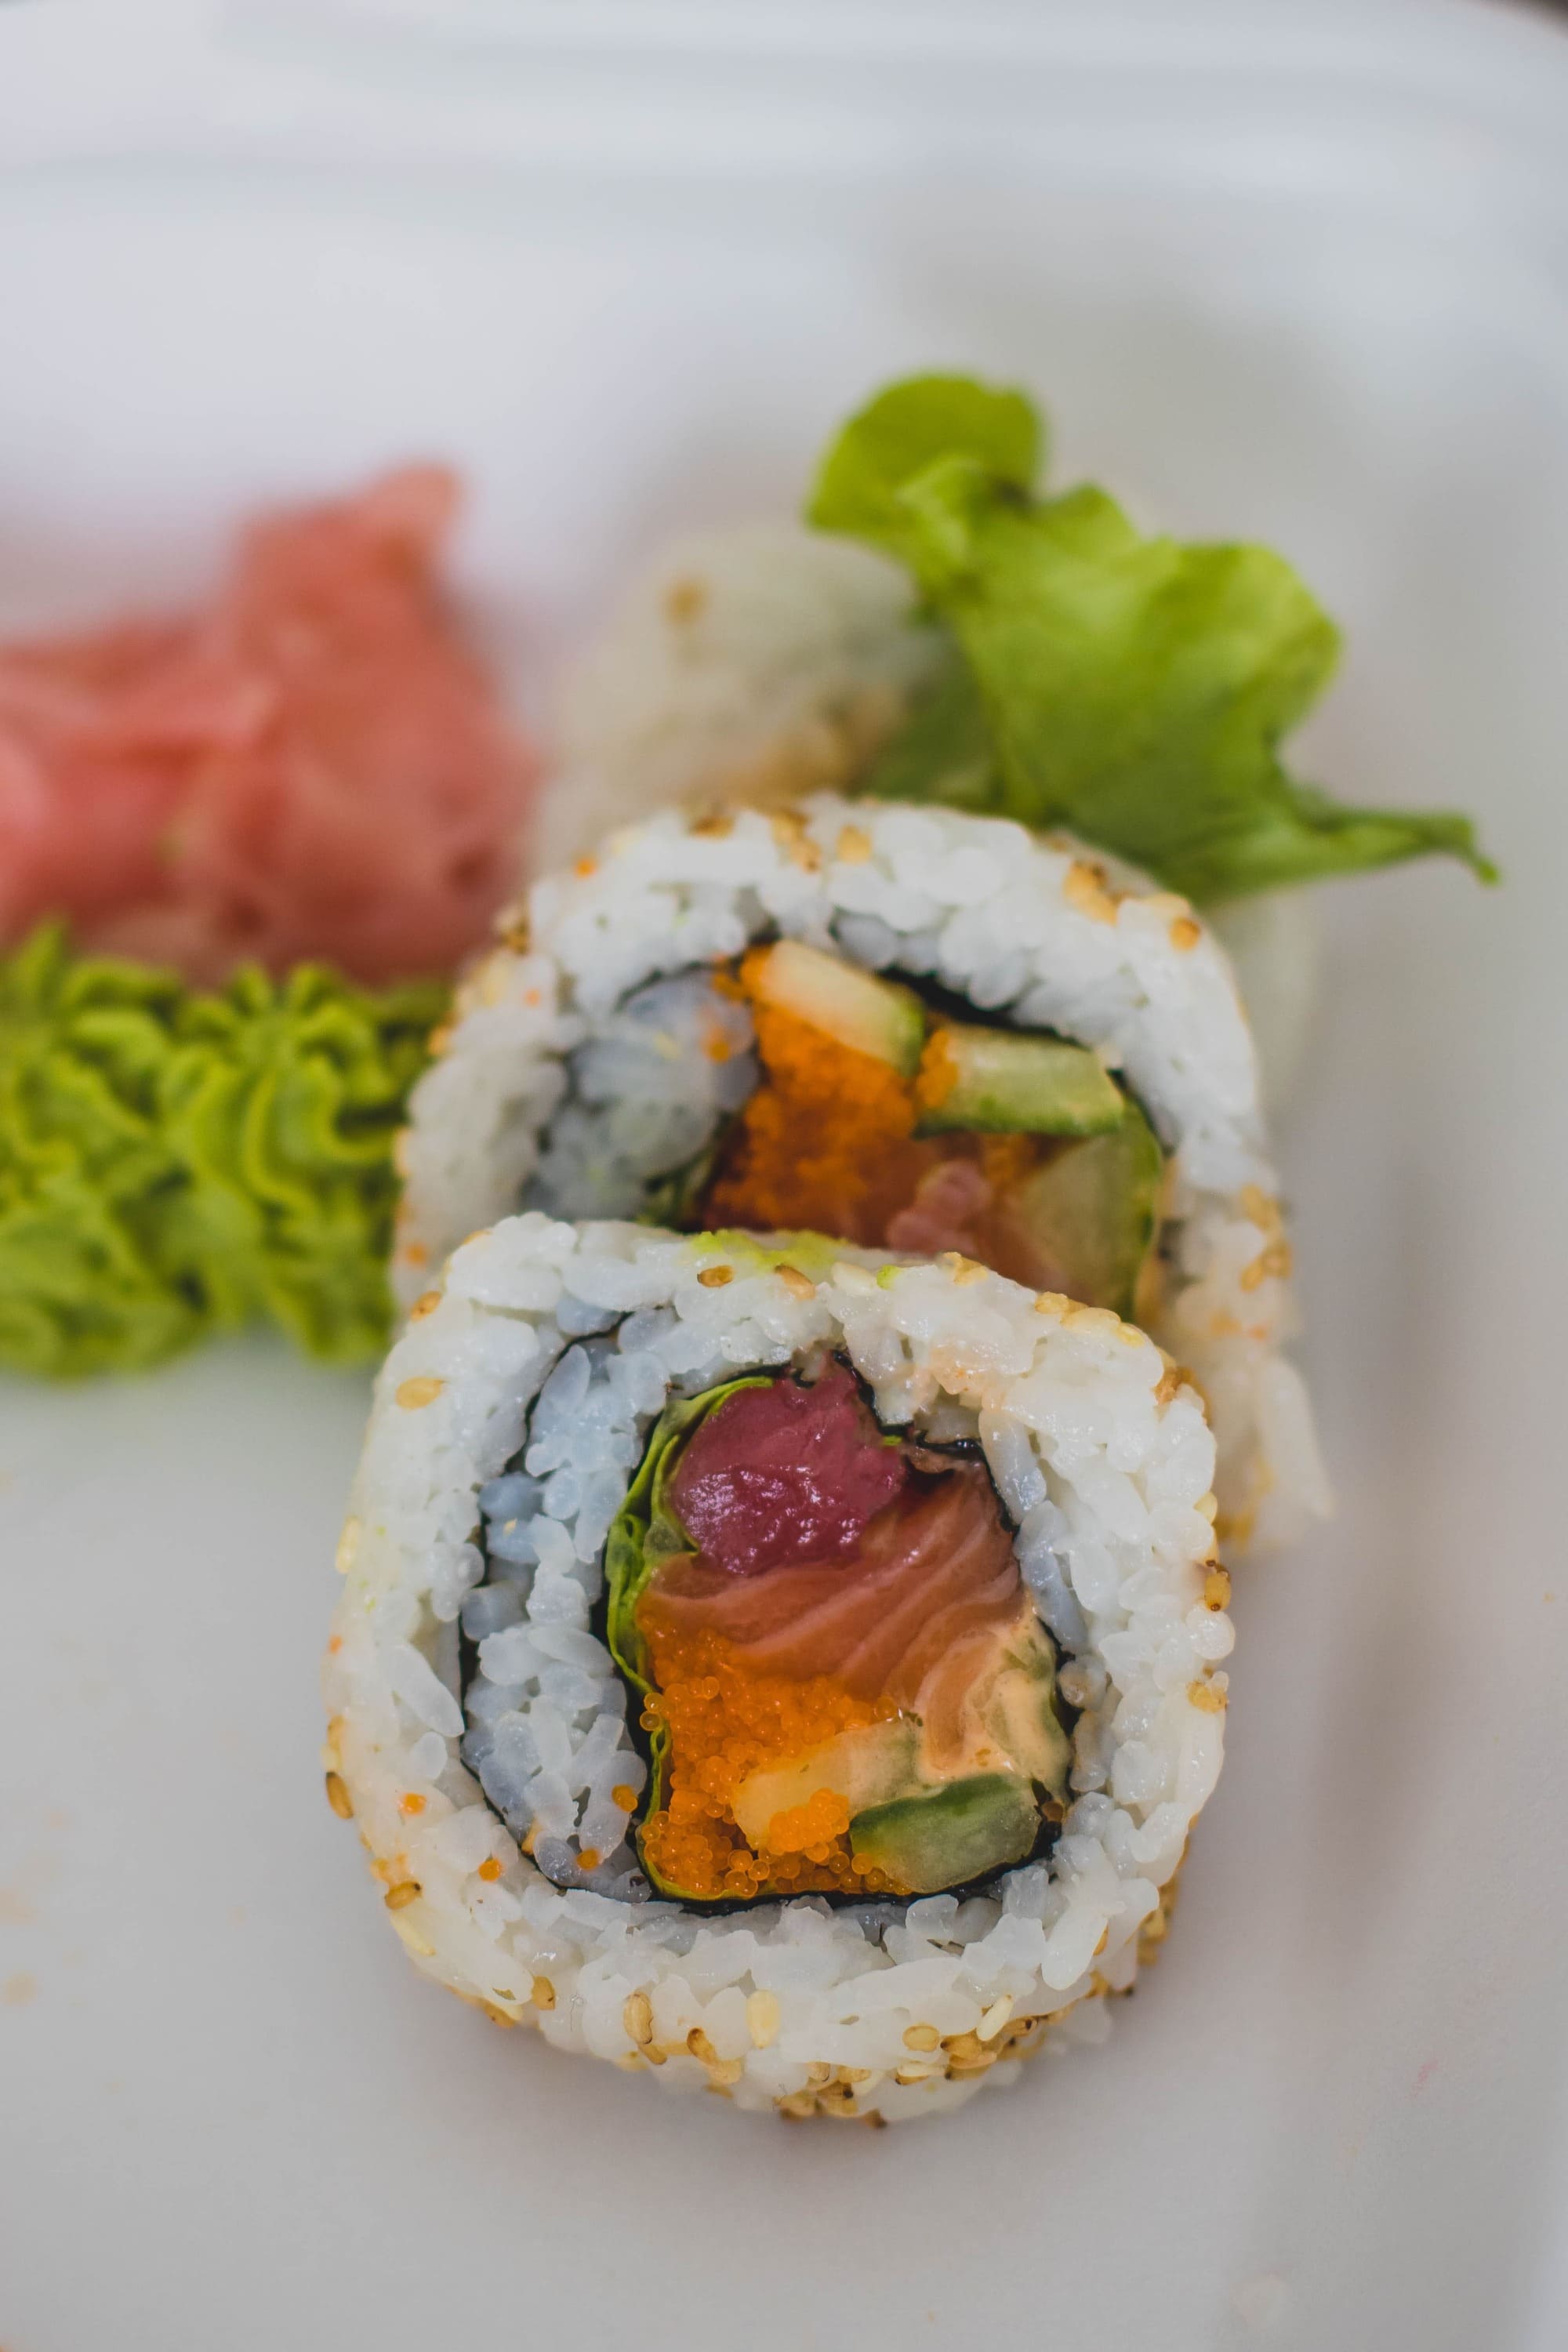 Imagen de una exquisita presentación de sushi fresco, con una combinación de ingredientes frescos y colores vibrantes que despiertan el apetito y la curiosidad gastronómica